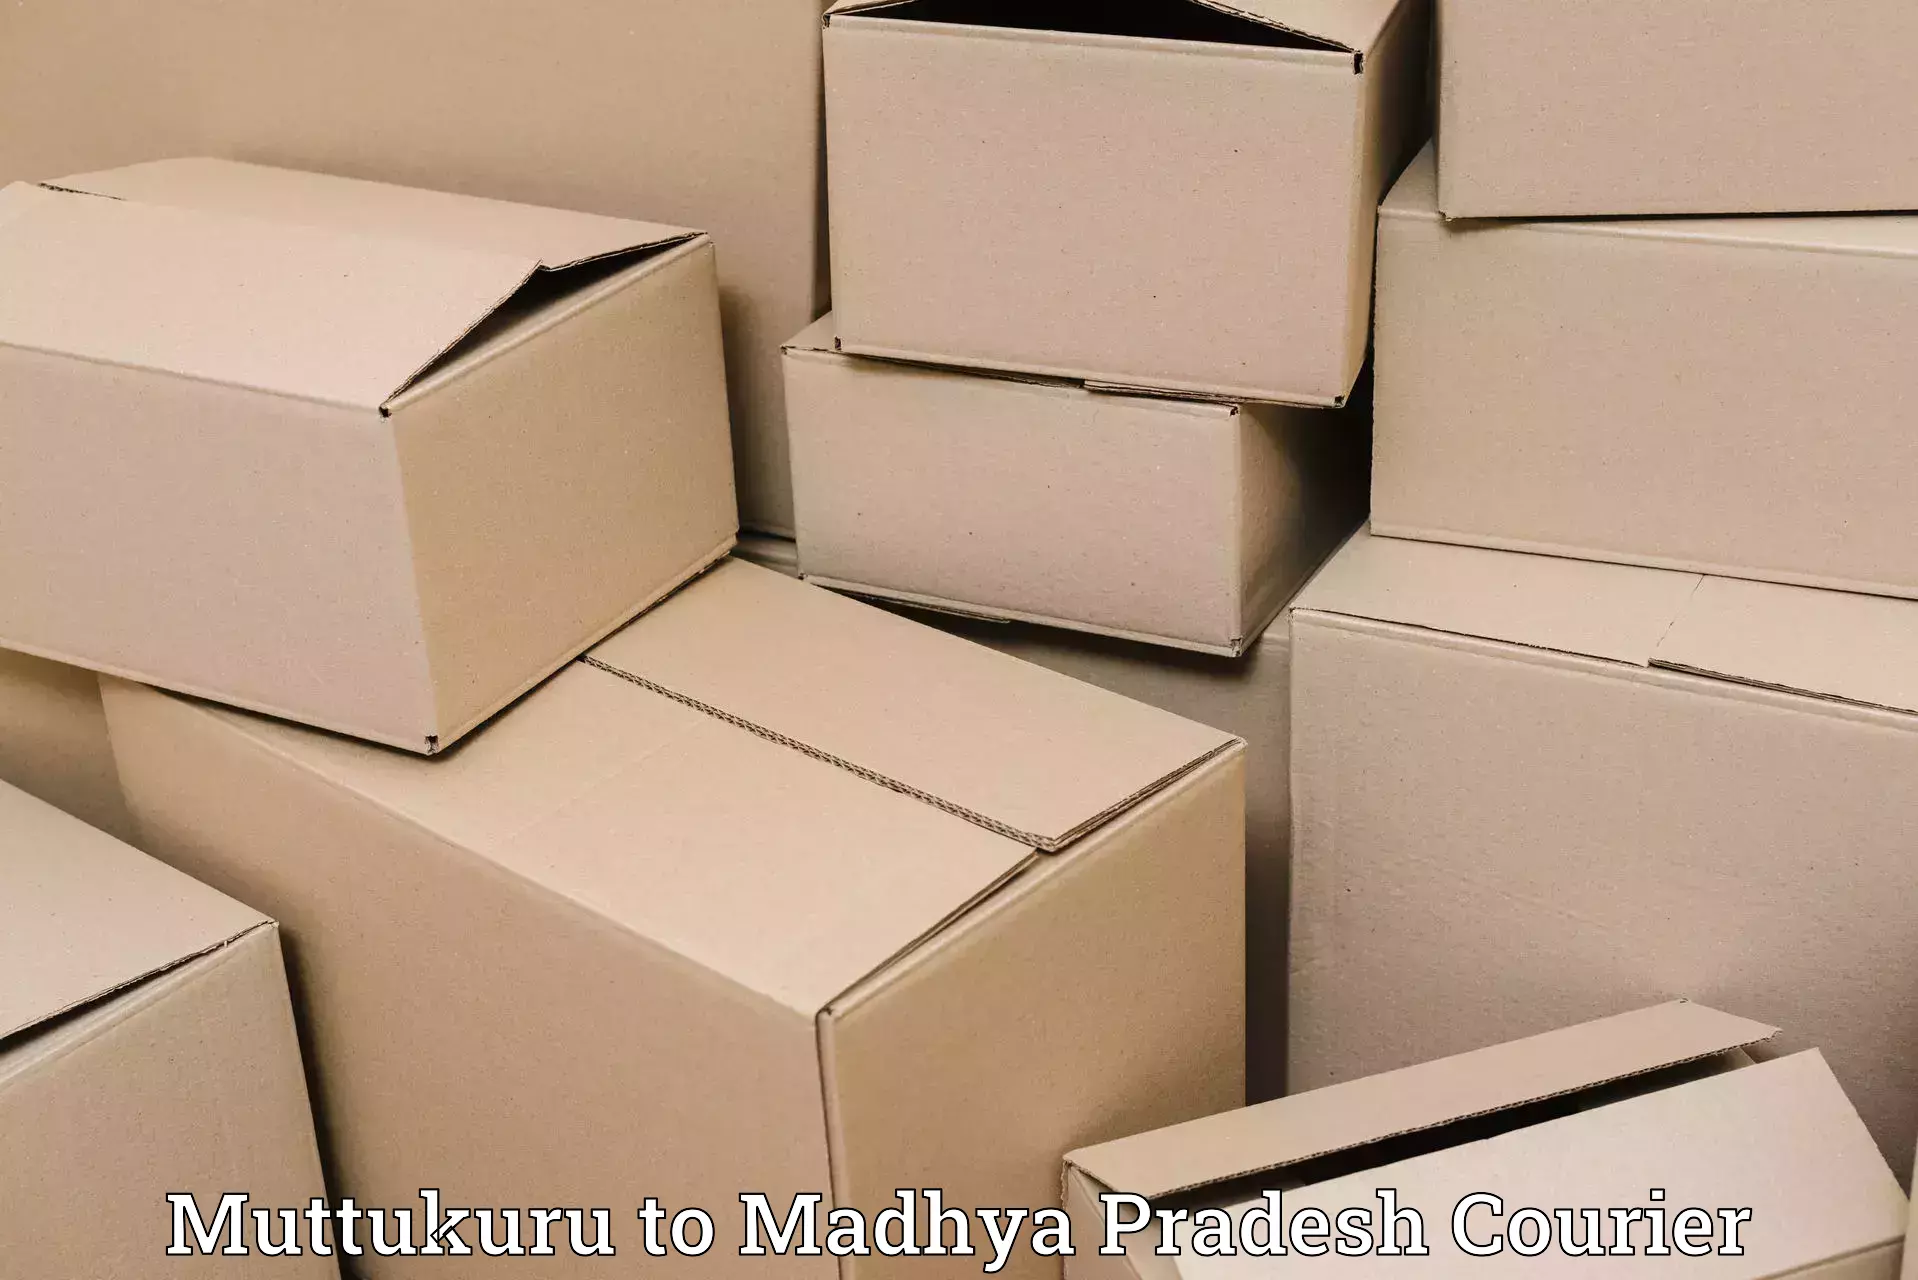 Flexible parcel services Muttukuru to Badnagar